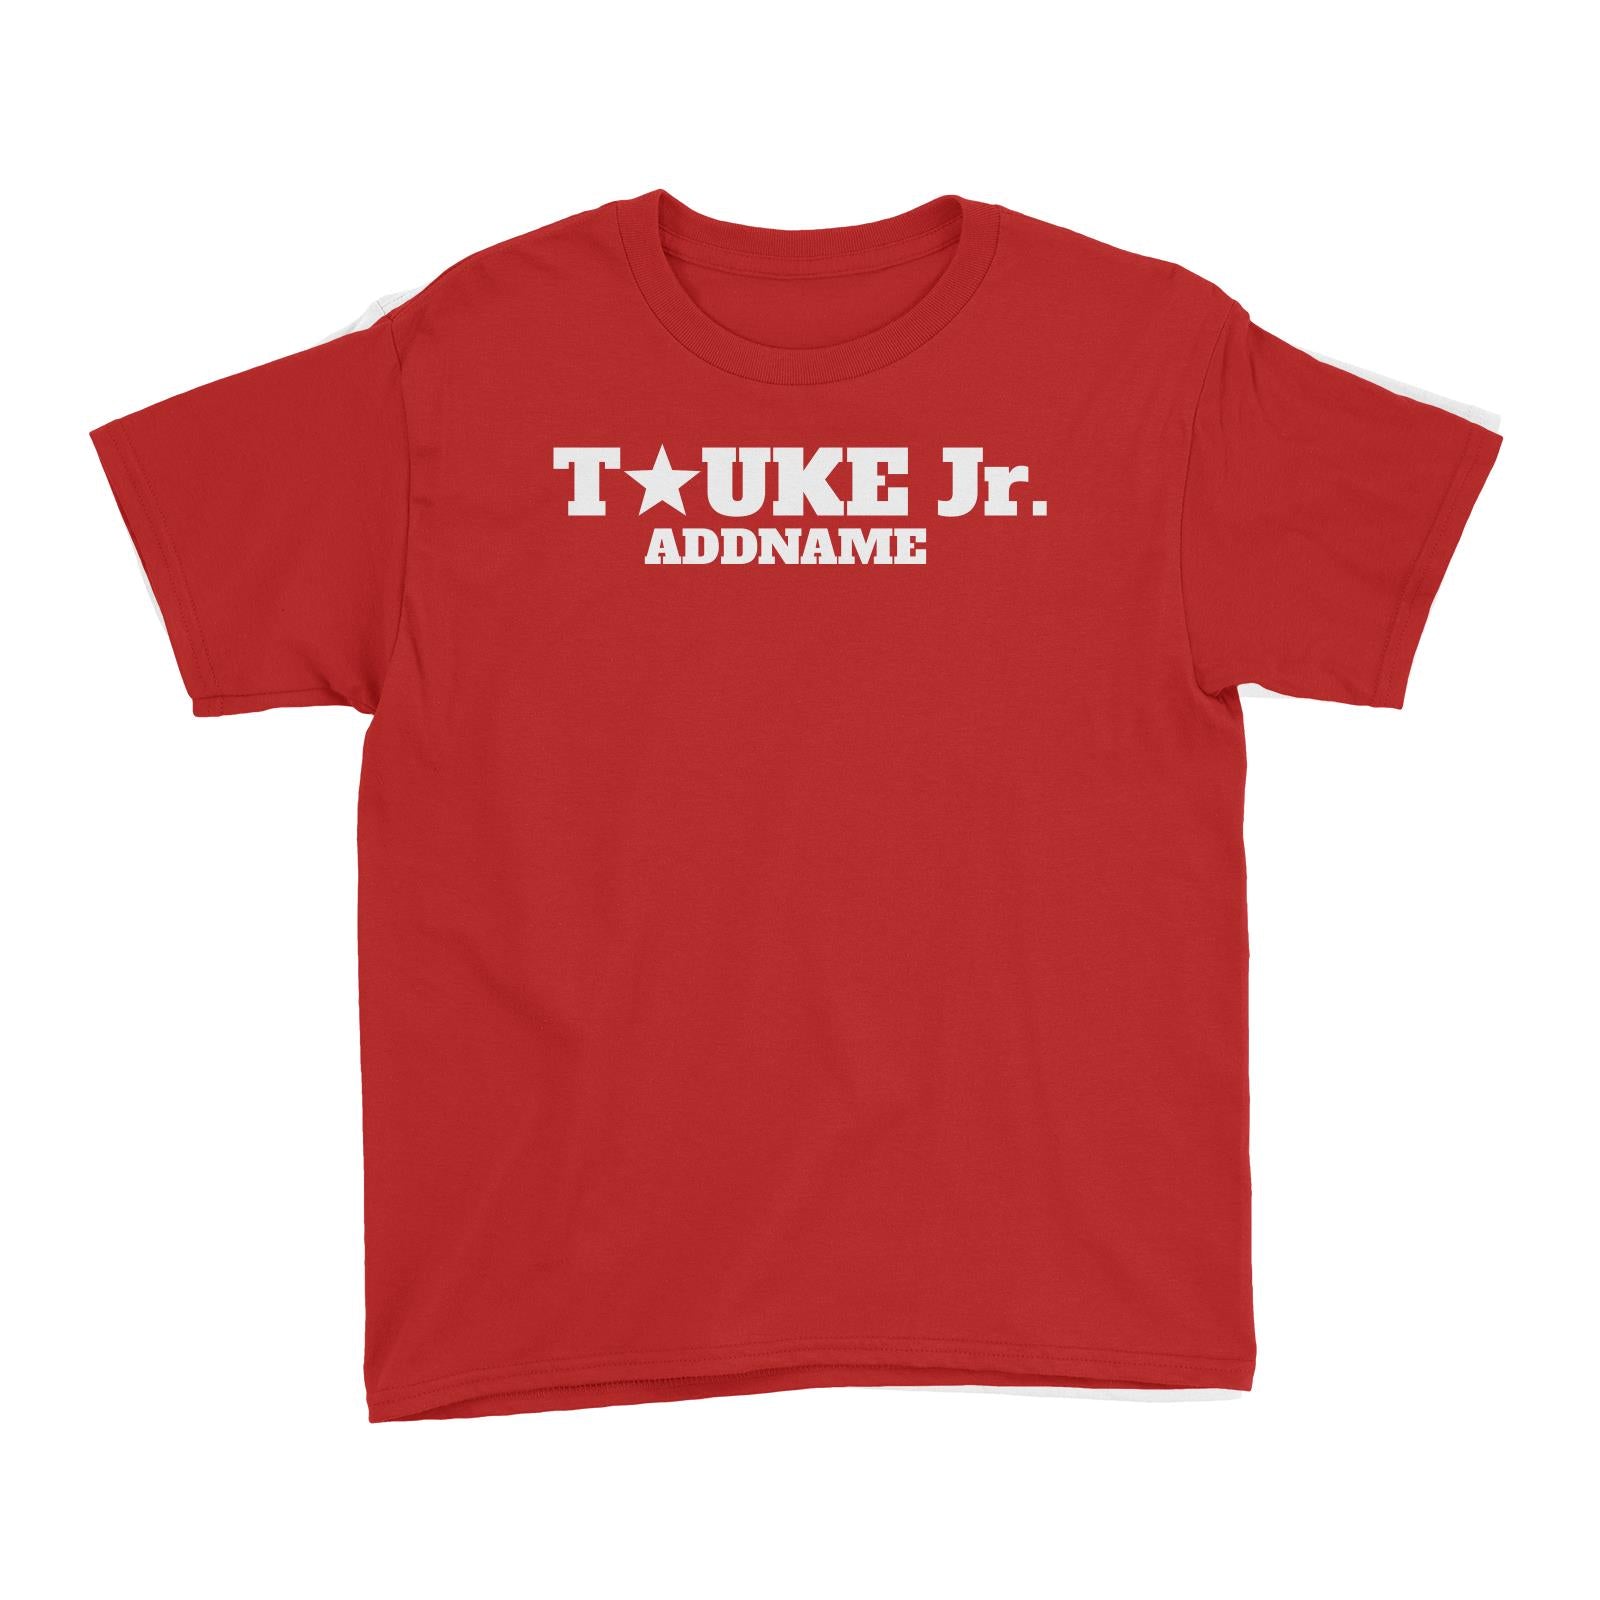 Tauke Jr Star Kid's T-Shirt